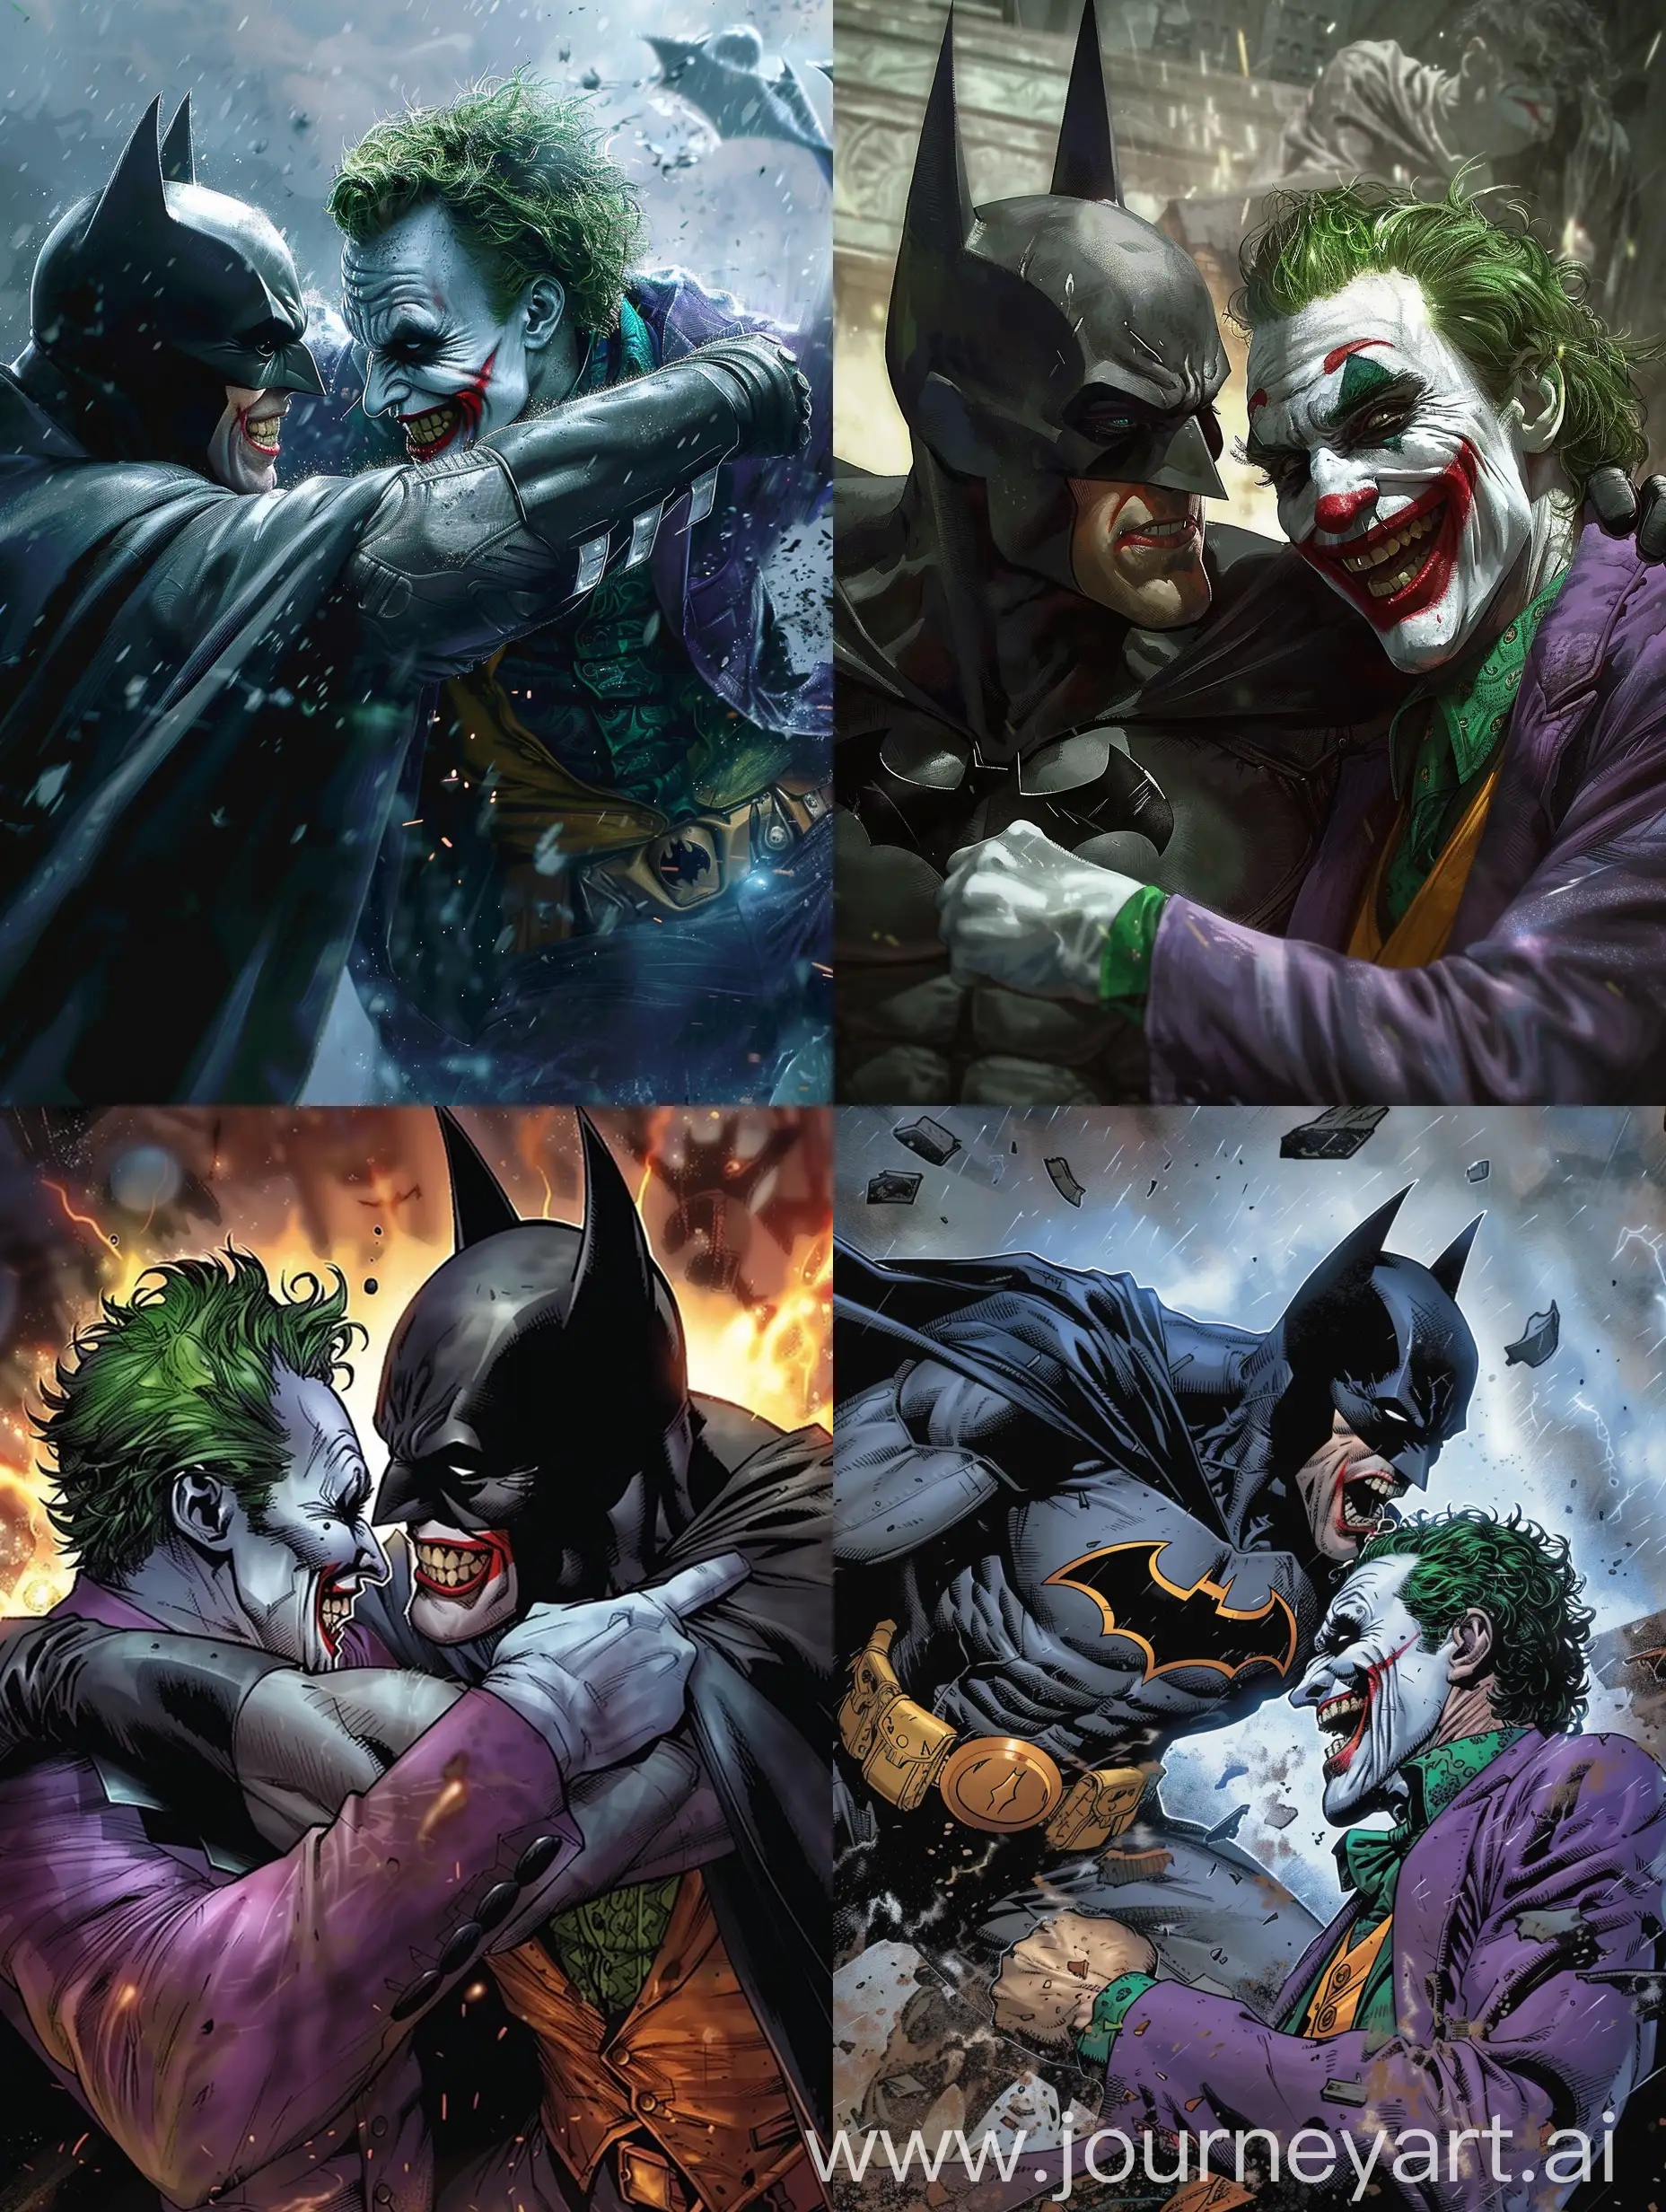 Epic-Batman-vs-Joker-Battle-in-Dynamic-34-Aspect-Ratio